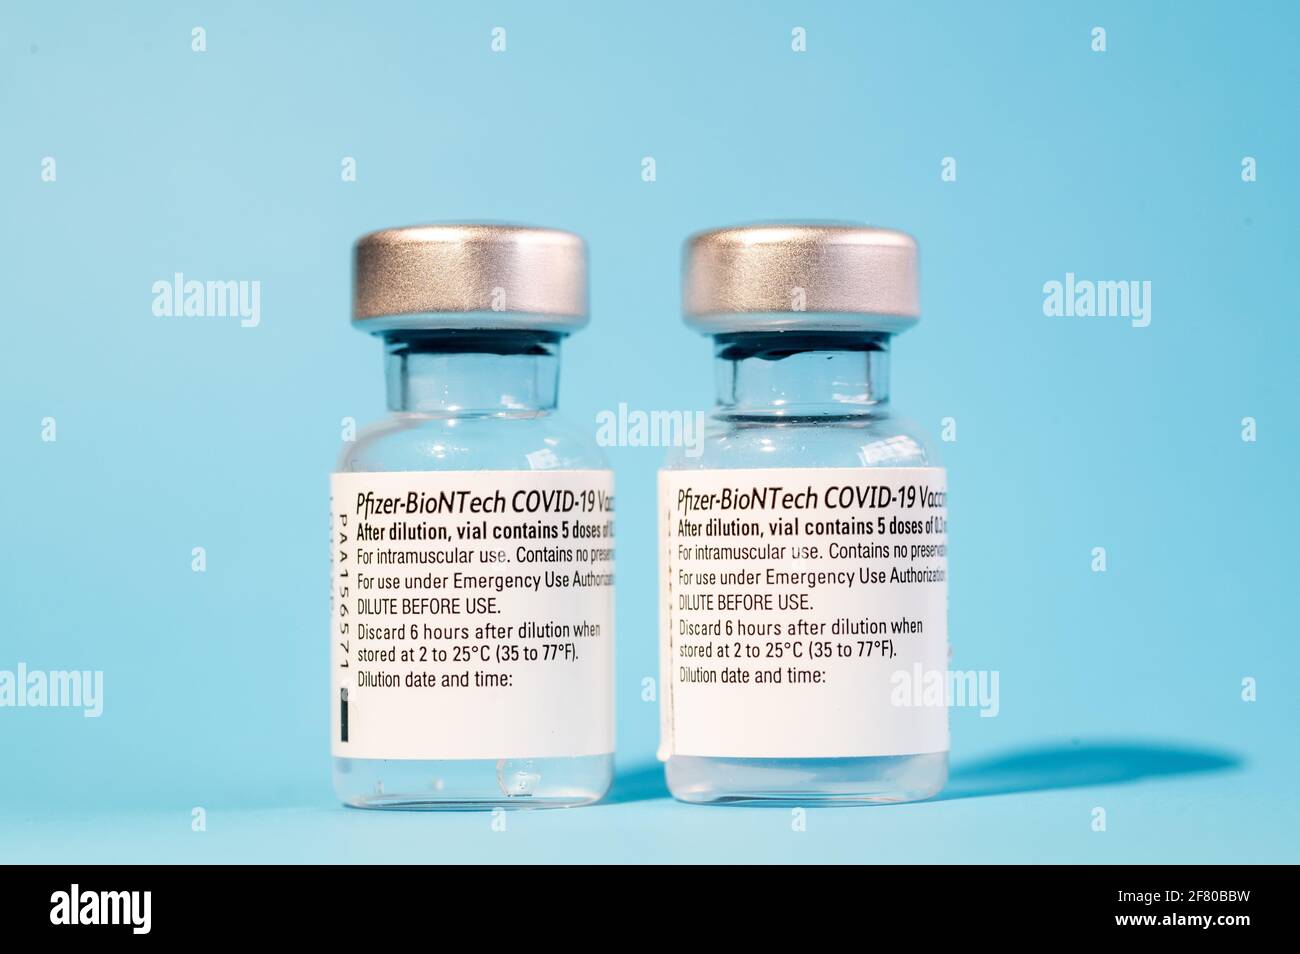 Flacons de vaccins Pfizer - BioNTech pour le traitement du coronavirus (COVID-19). Cette semaine, l'Espagne a reçu une nouvelle expédition de 1.2 millions de doses du vaccin Banque D'Images